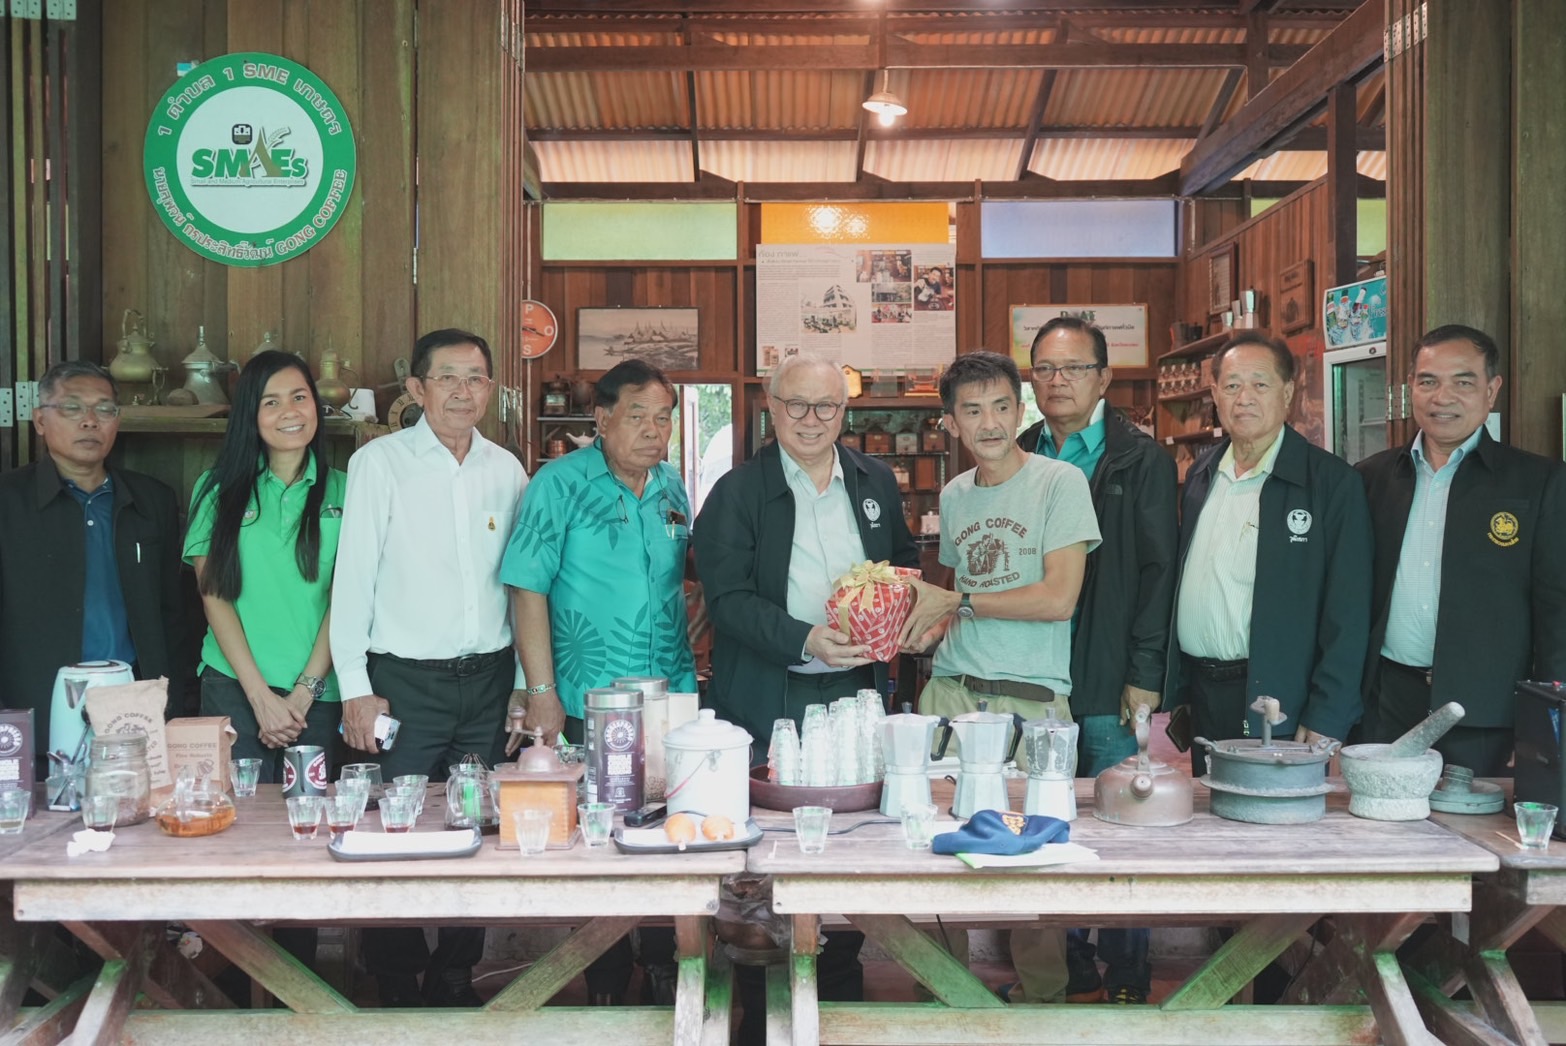 สว.พบประชาชนภาคใต้ รับฟังการดำเนินงานวิสาหกิจชุมชนแปรรูปกาแฟคั่วมือและท่องเที่ยวเชิงเกษตร ชูไอเดียยกระดับกาแฟไทยสู่ตลาดโลก